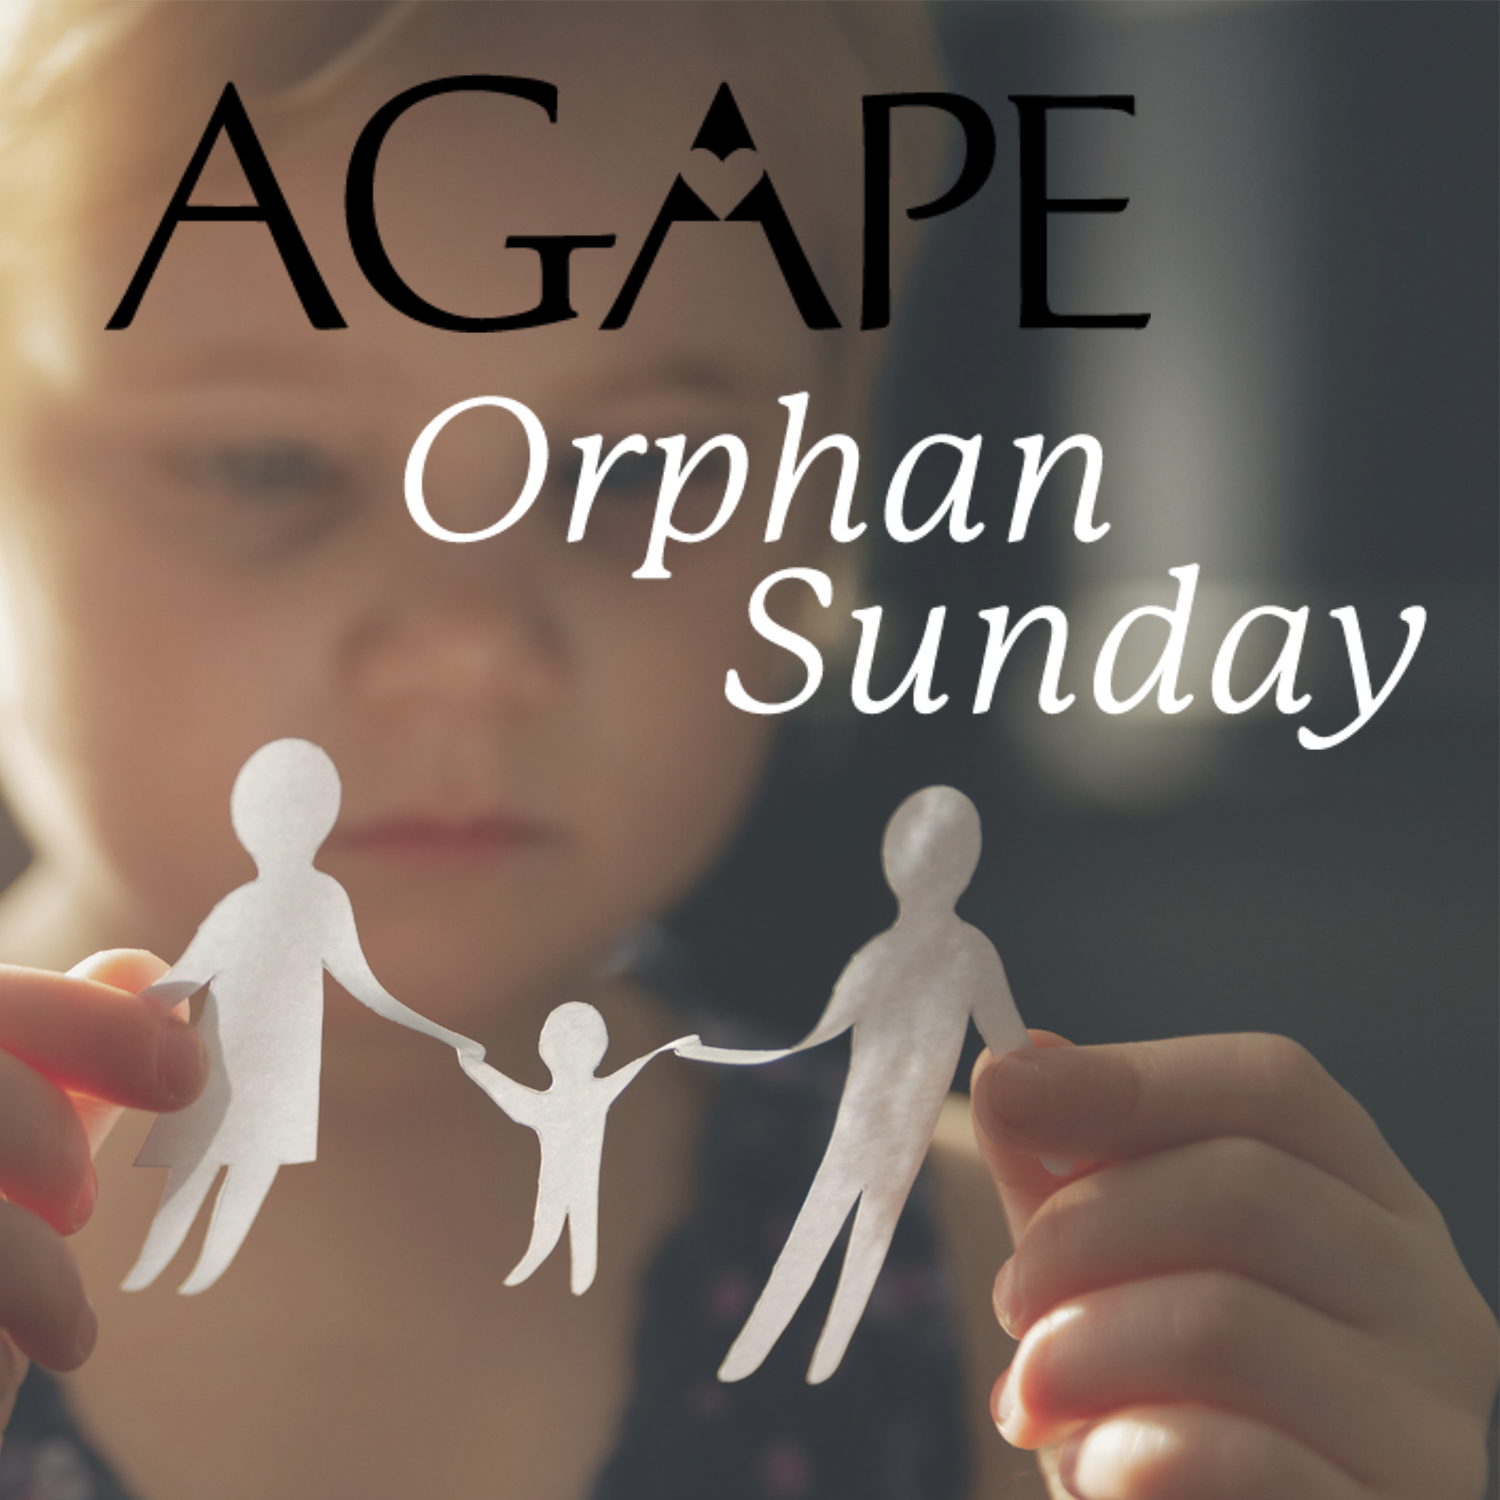 Agape Orphan Sunday